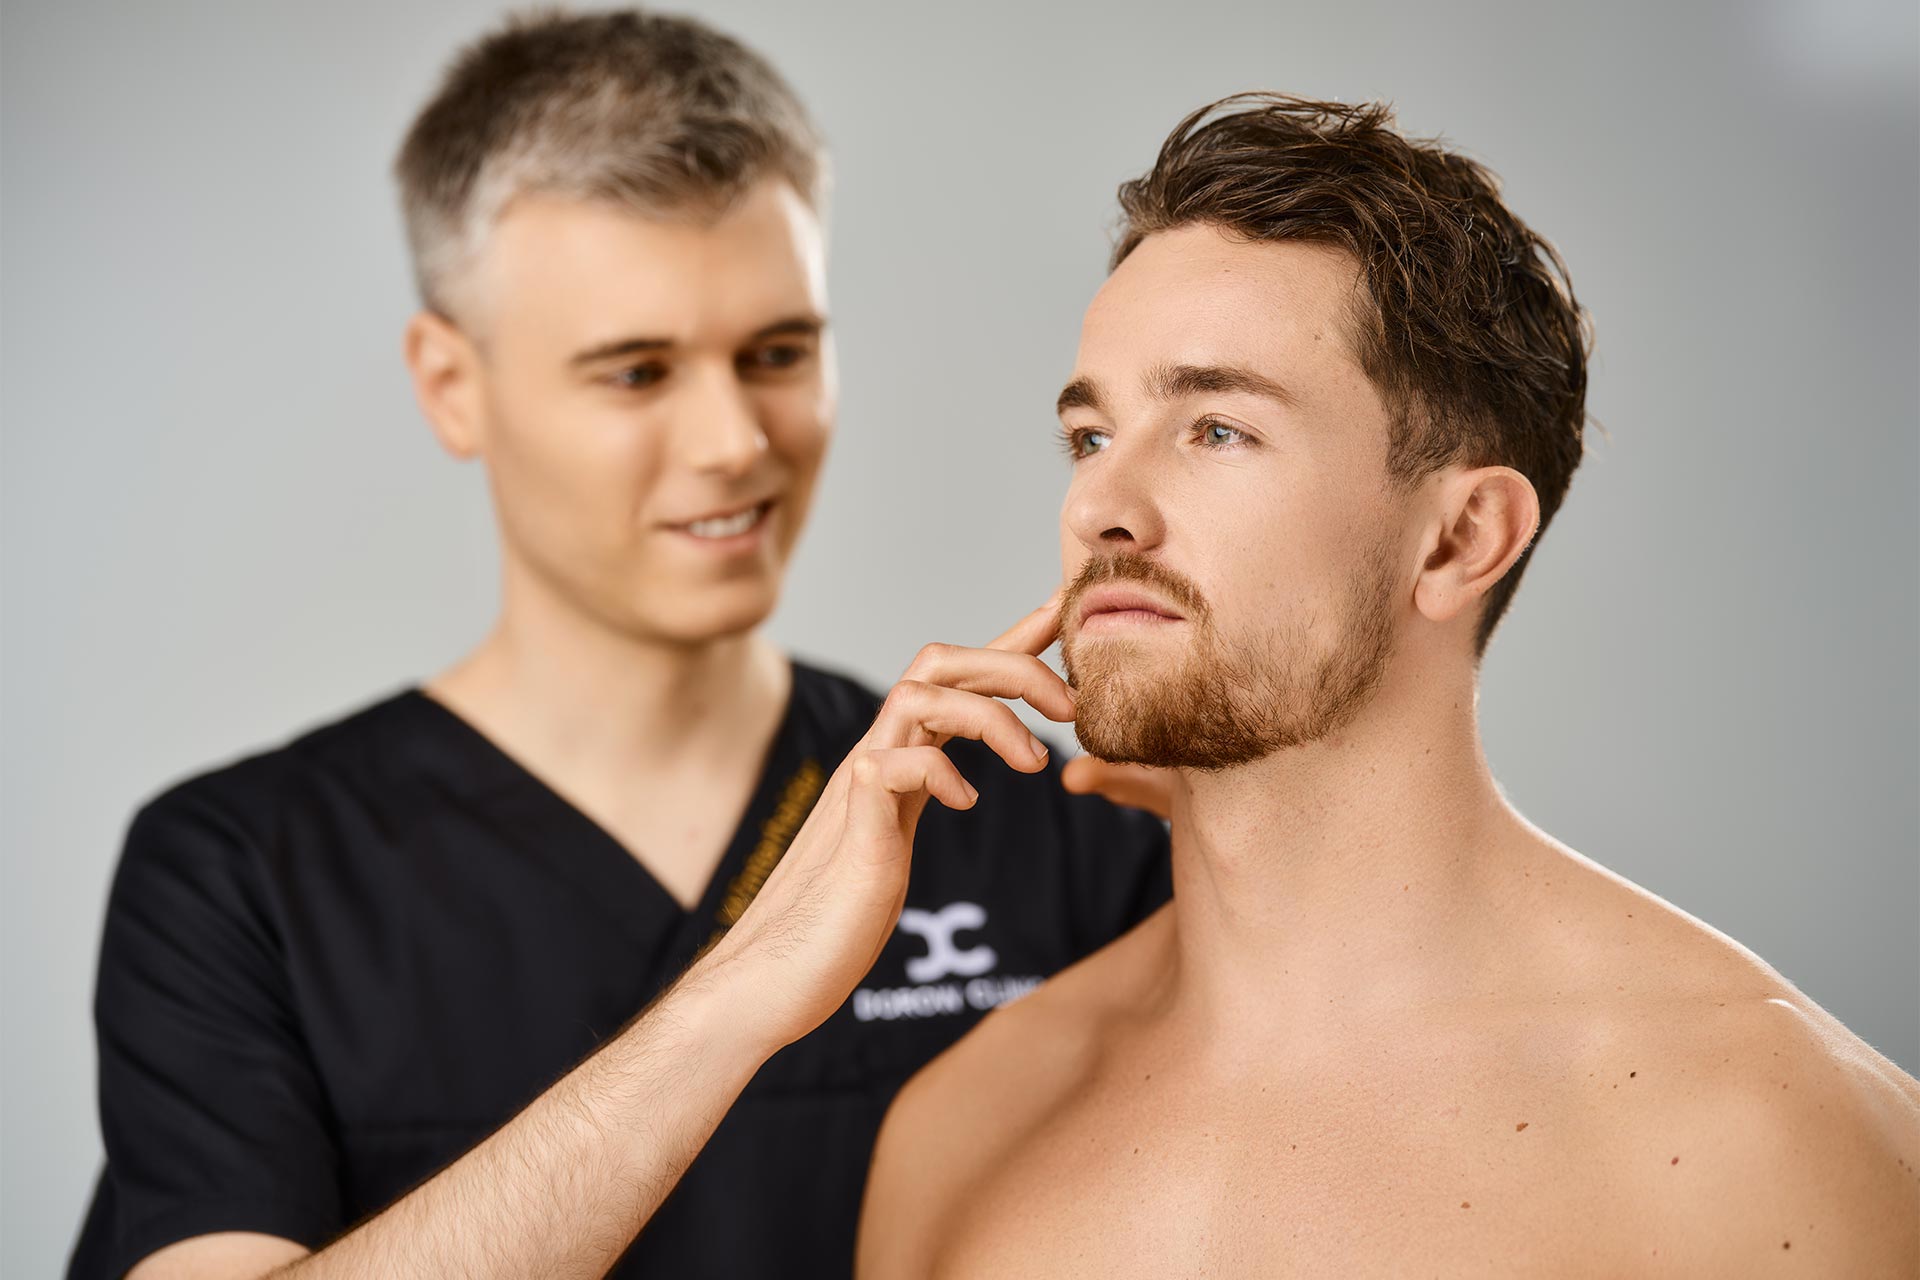 Arzt berät Mann zur Ohrläppchenvergrößerung